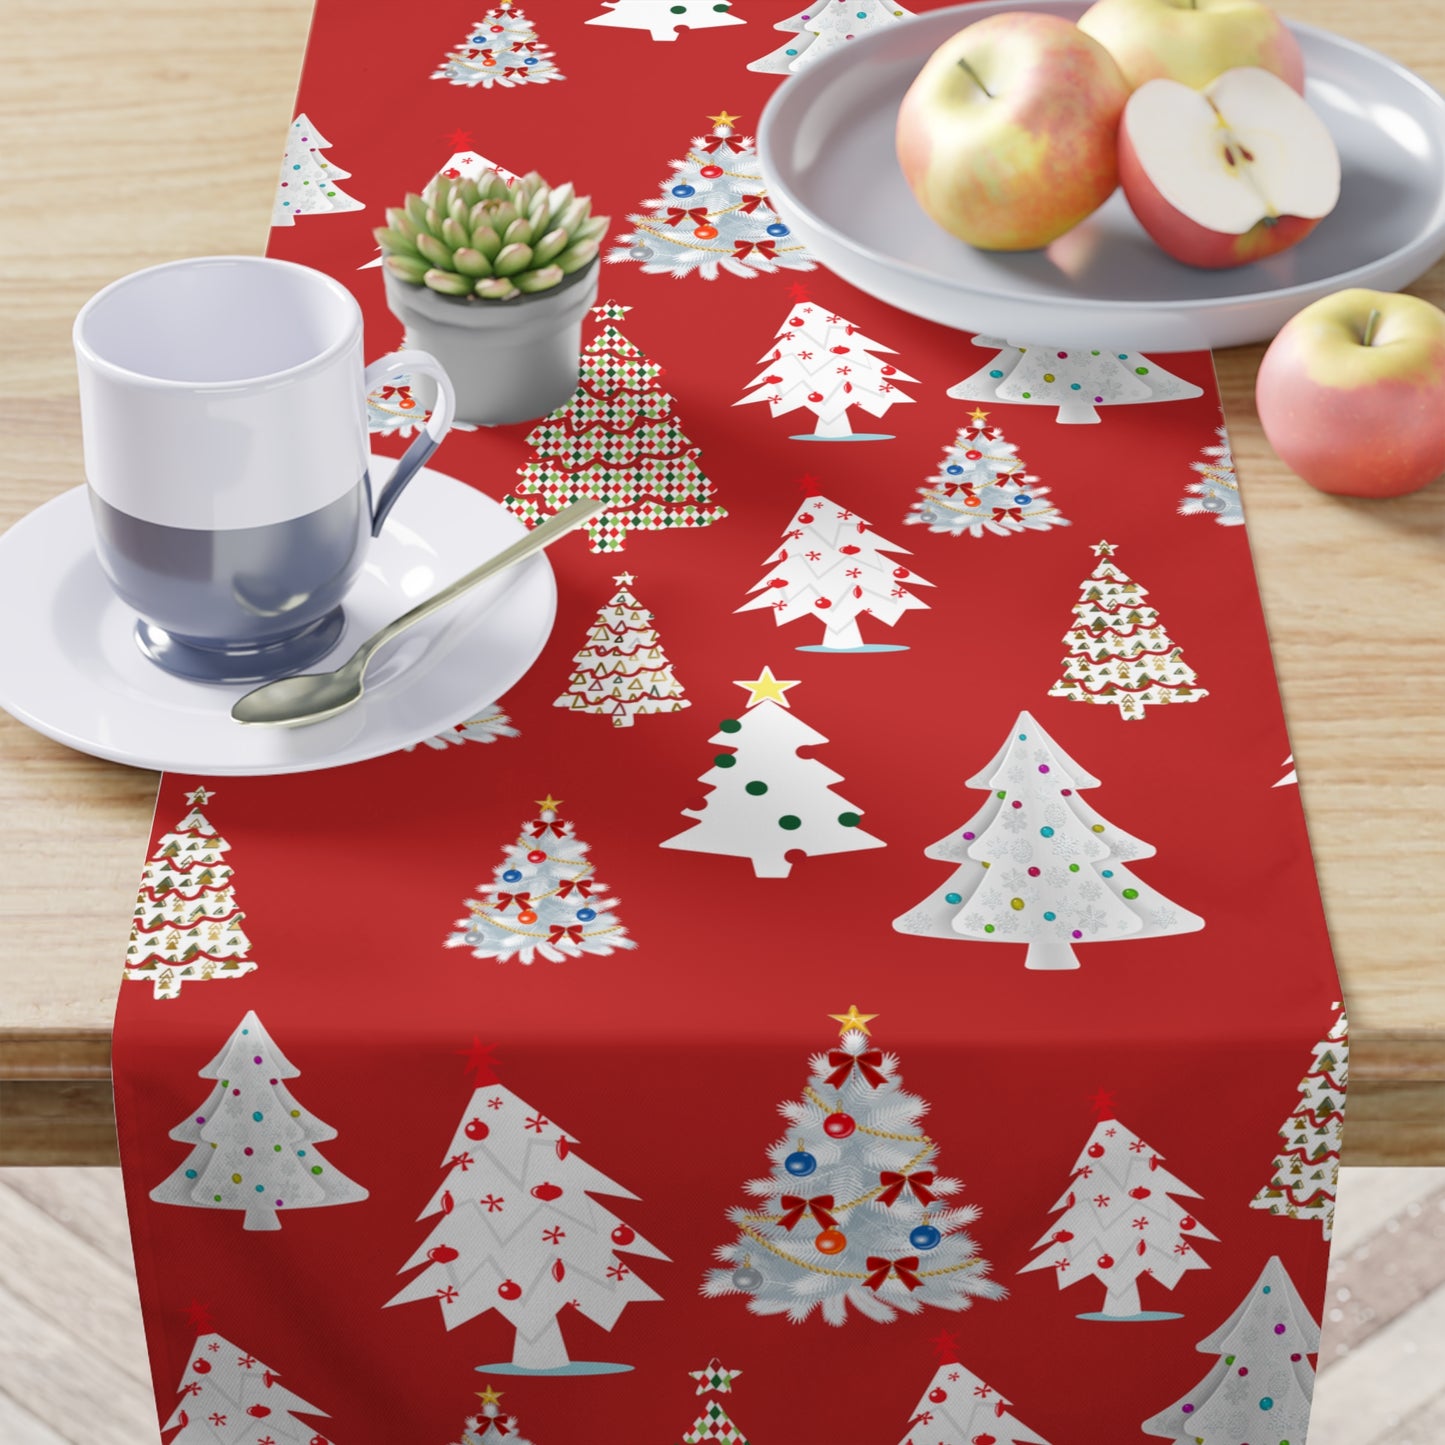 Red Christmas Table Runner / Christmas Tree Print Runner